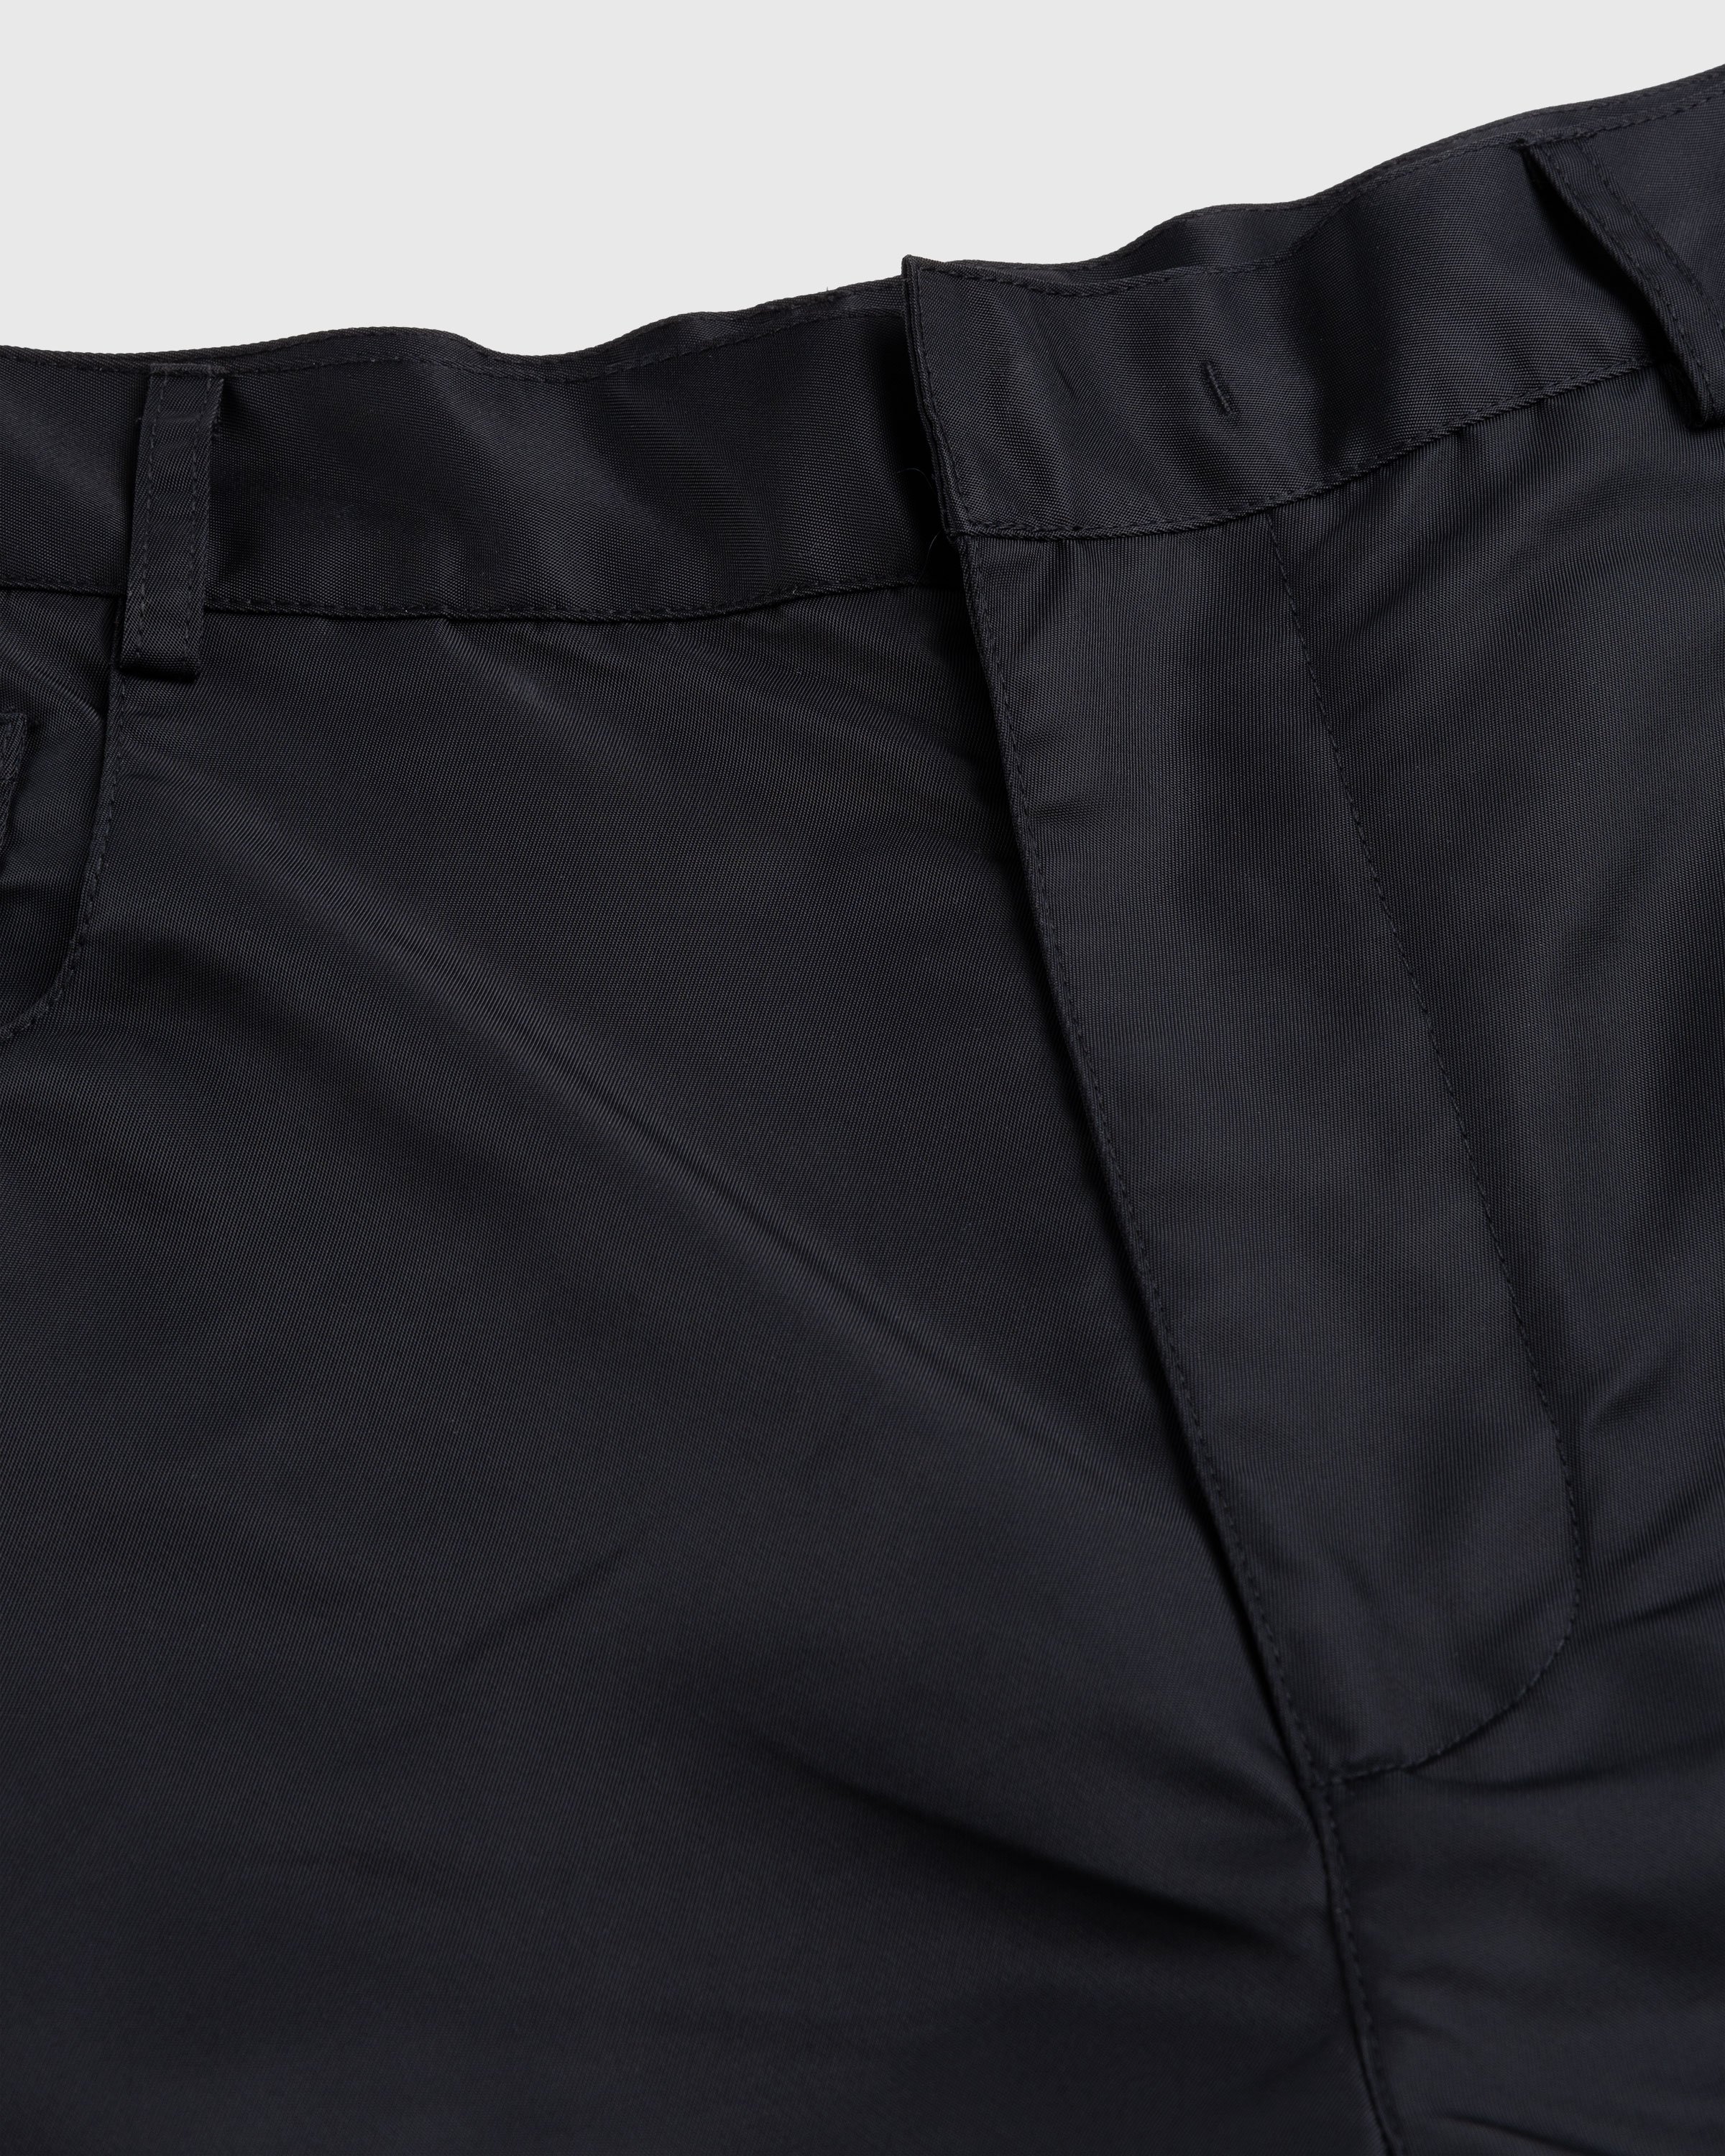 Trussardi - Nylon Shorts Black - Clothing - Black - Image 4